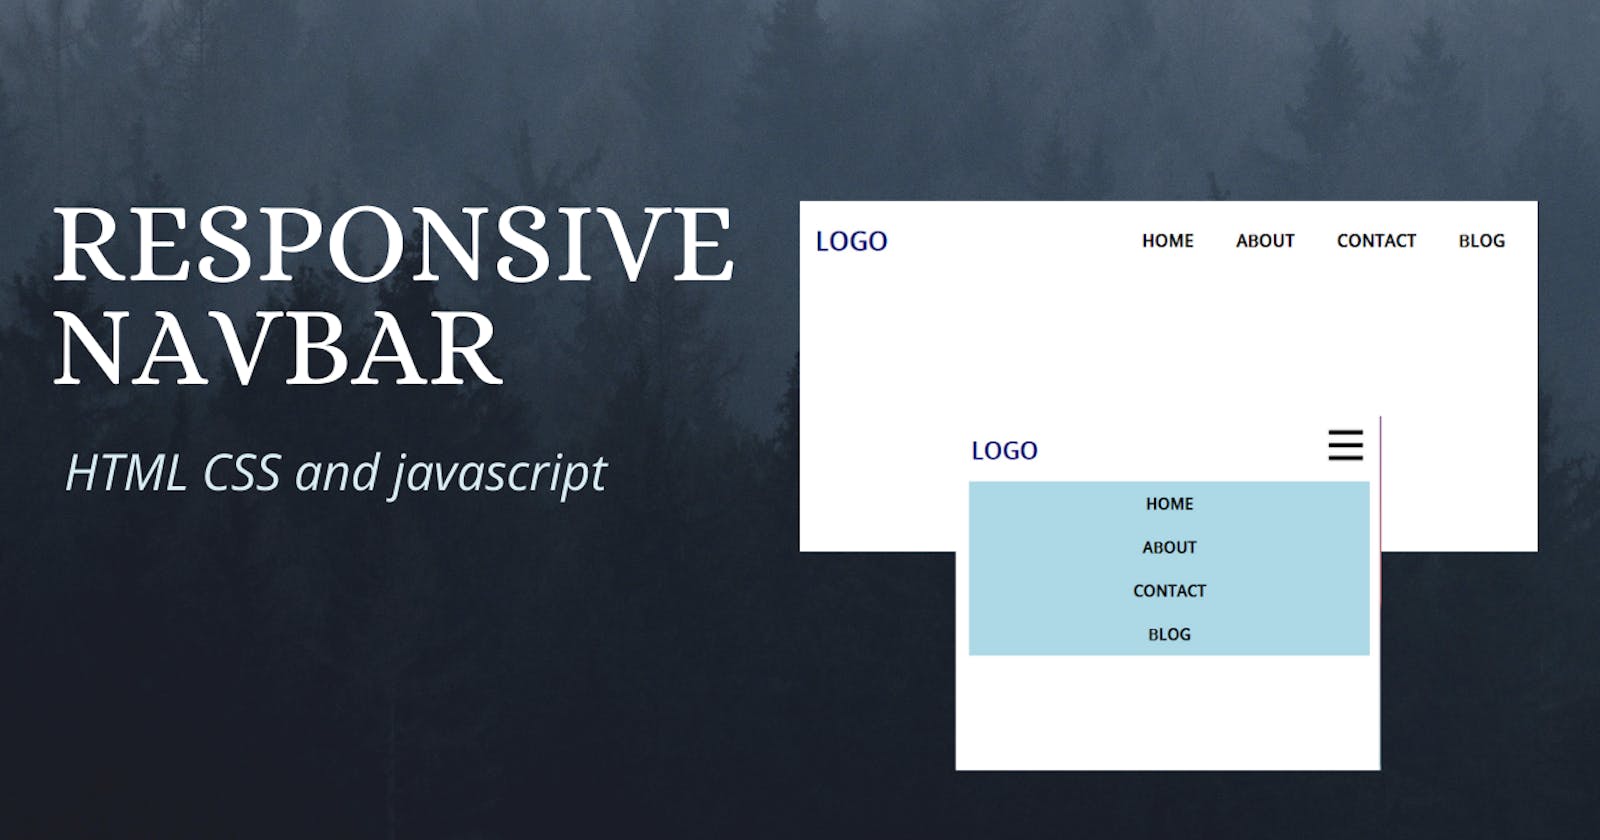 Responsive Navbar using HTML, CSS, and Javascript